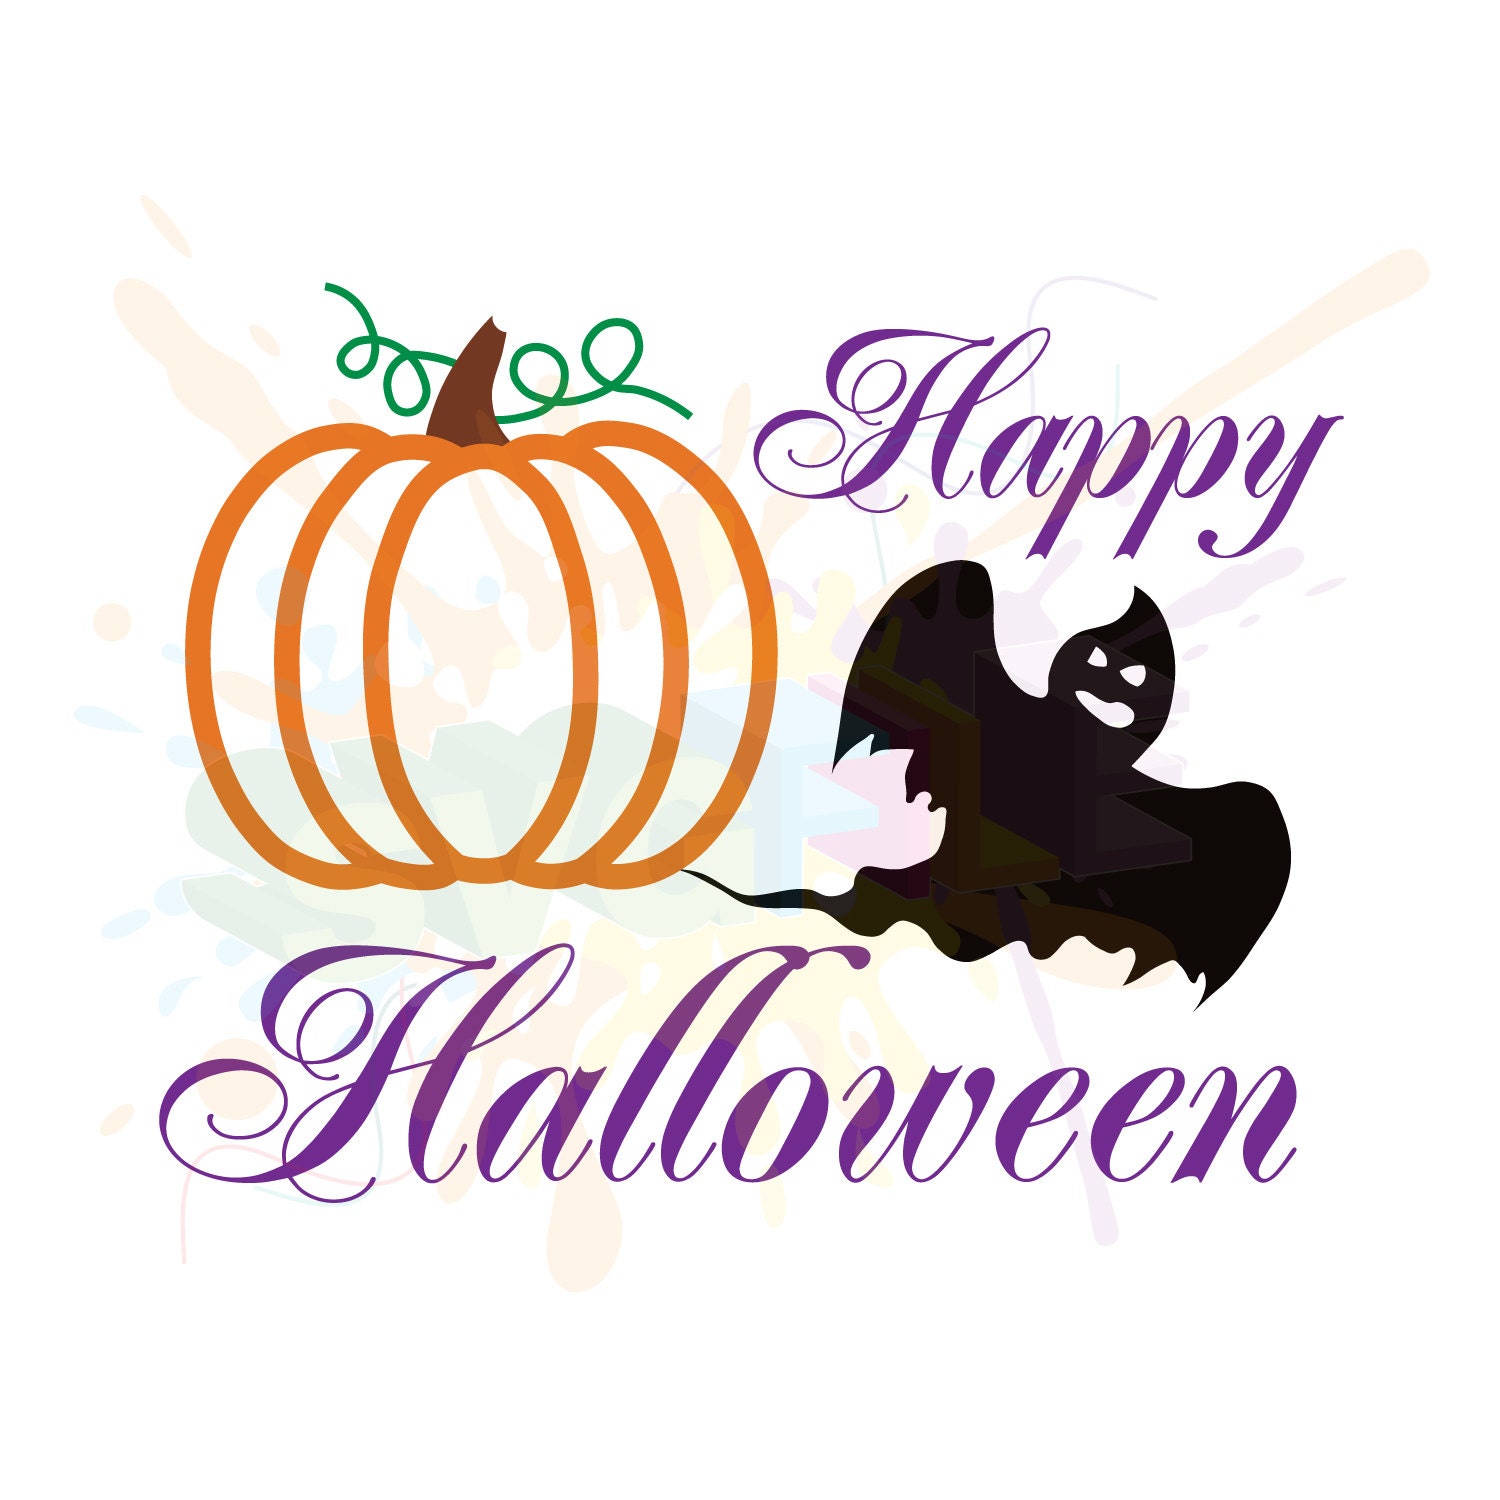 Download Halloween SVG Files for Cutting Pumpkin Cricut Fall ...